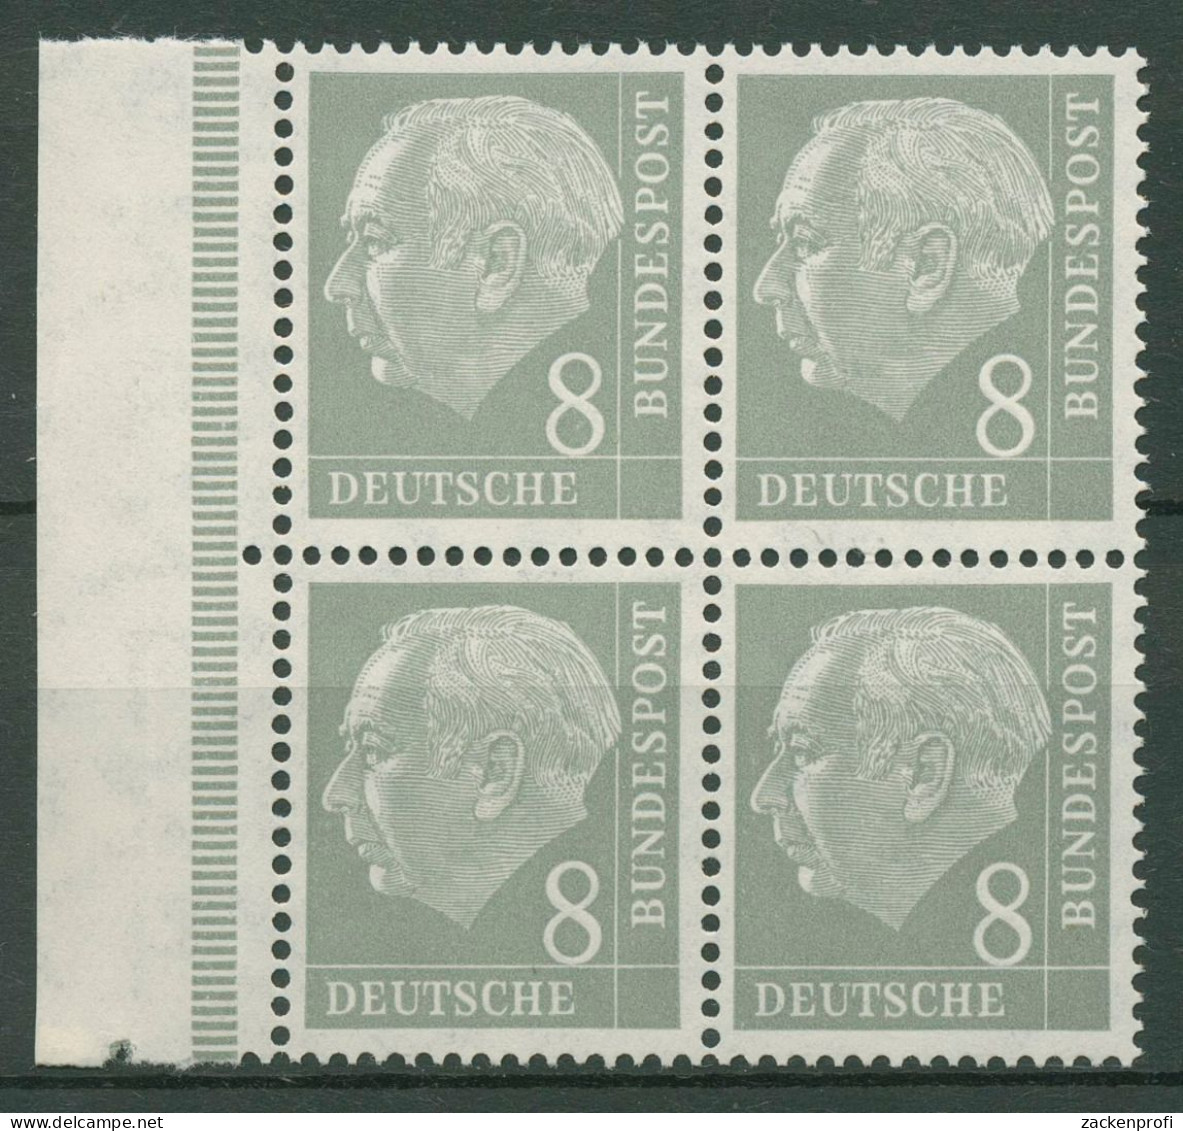 Bund 1954 Heuss I Bogenmarke 182 X Ww 4er-Block Rand Links Postfrisch - Unused Stamps